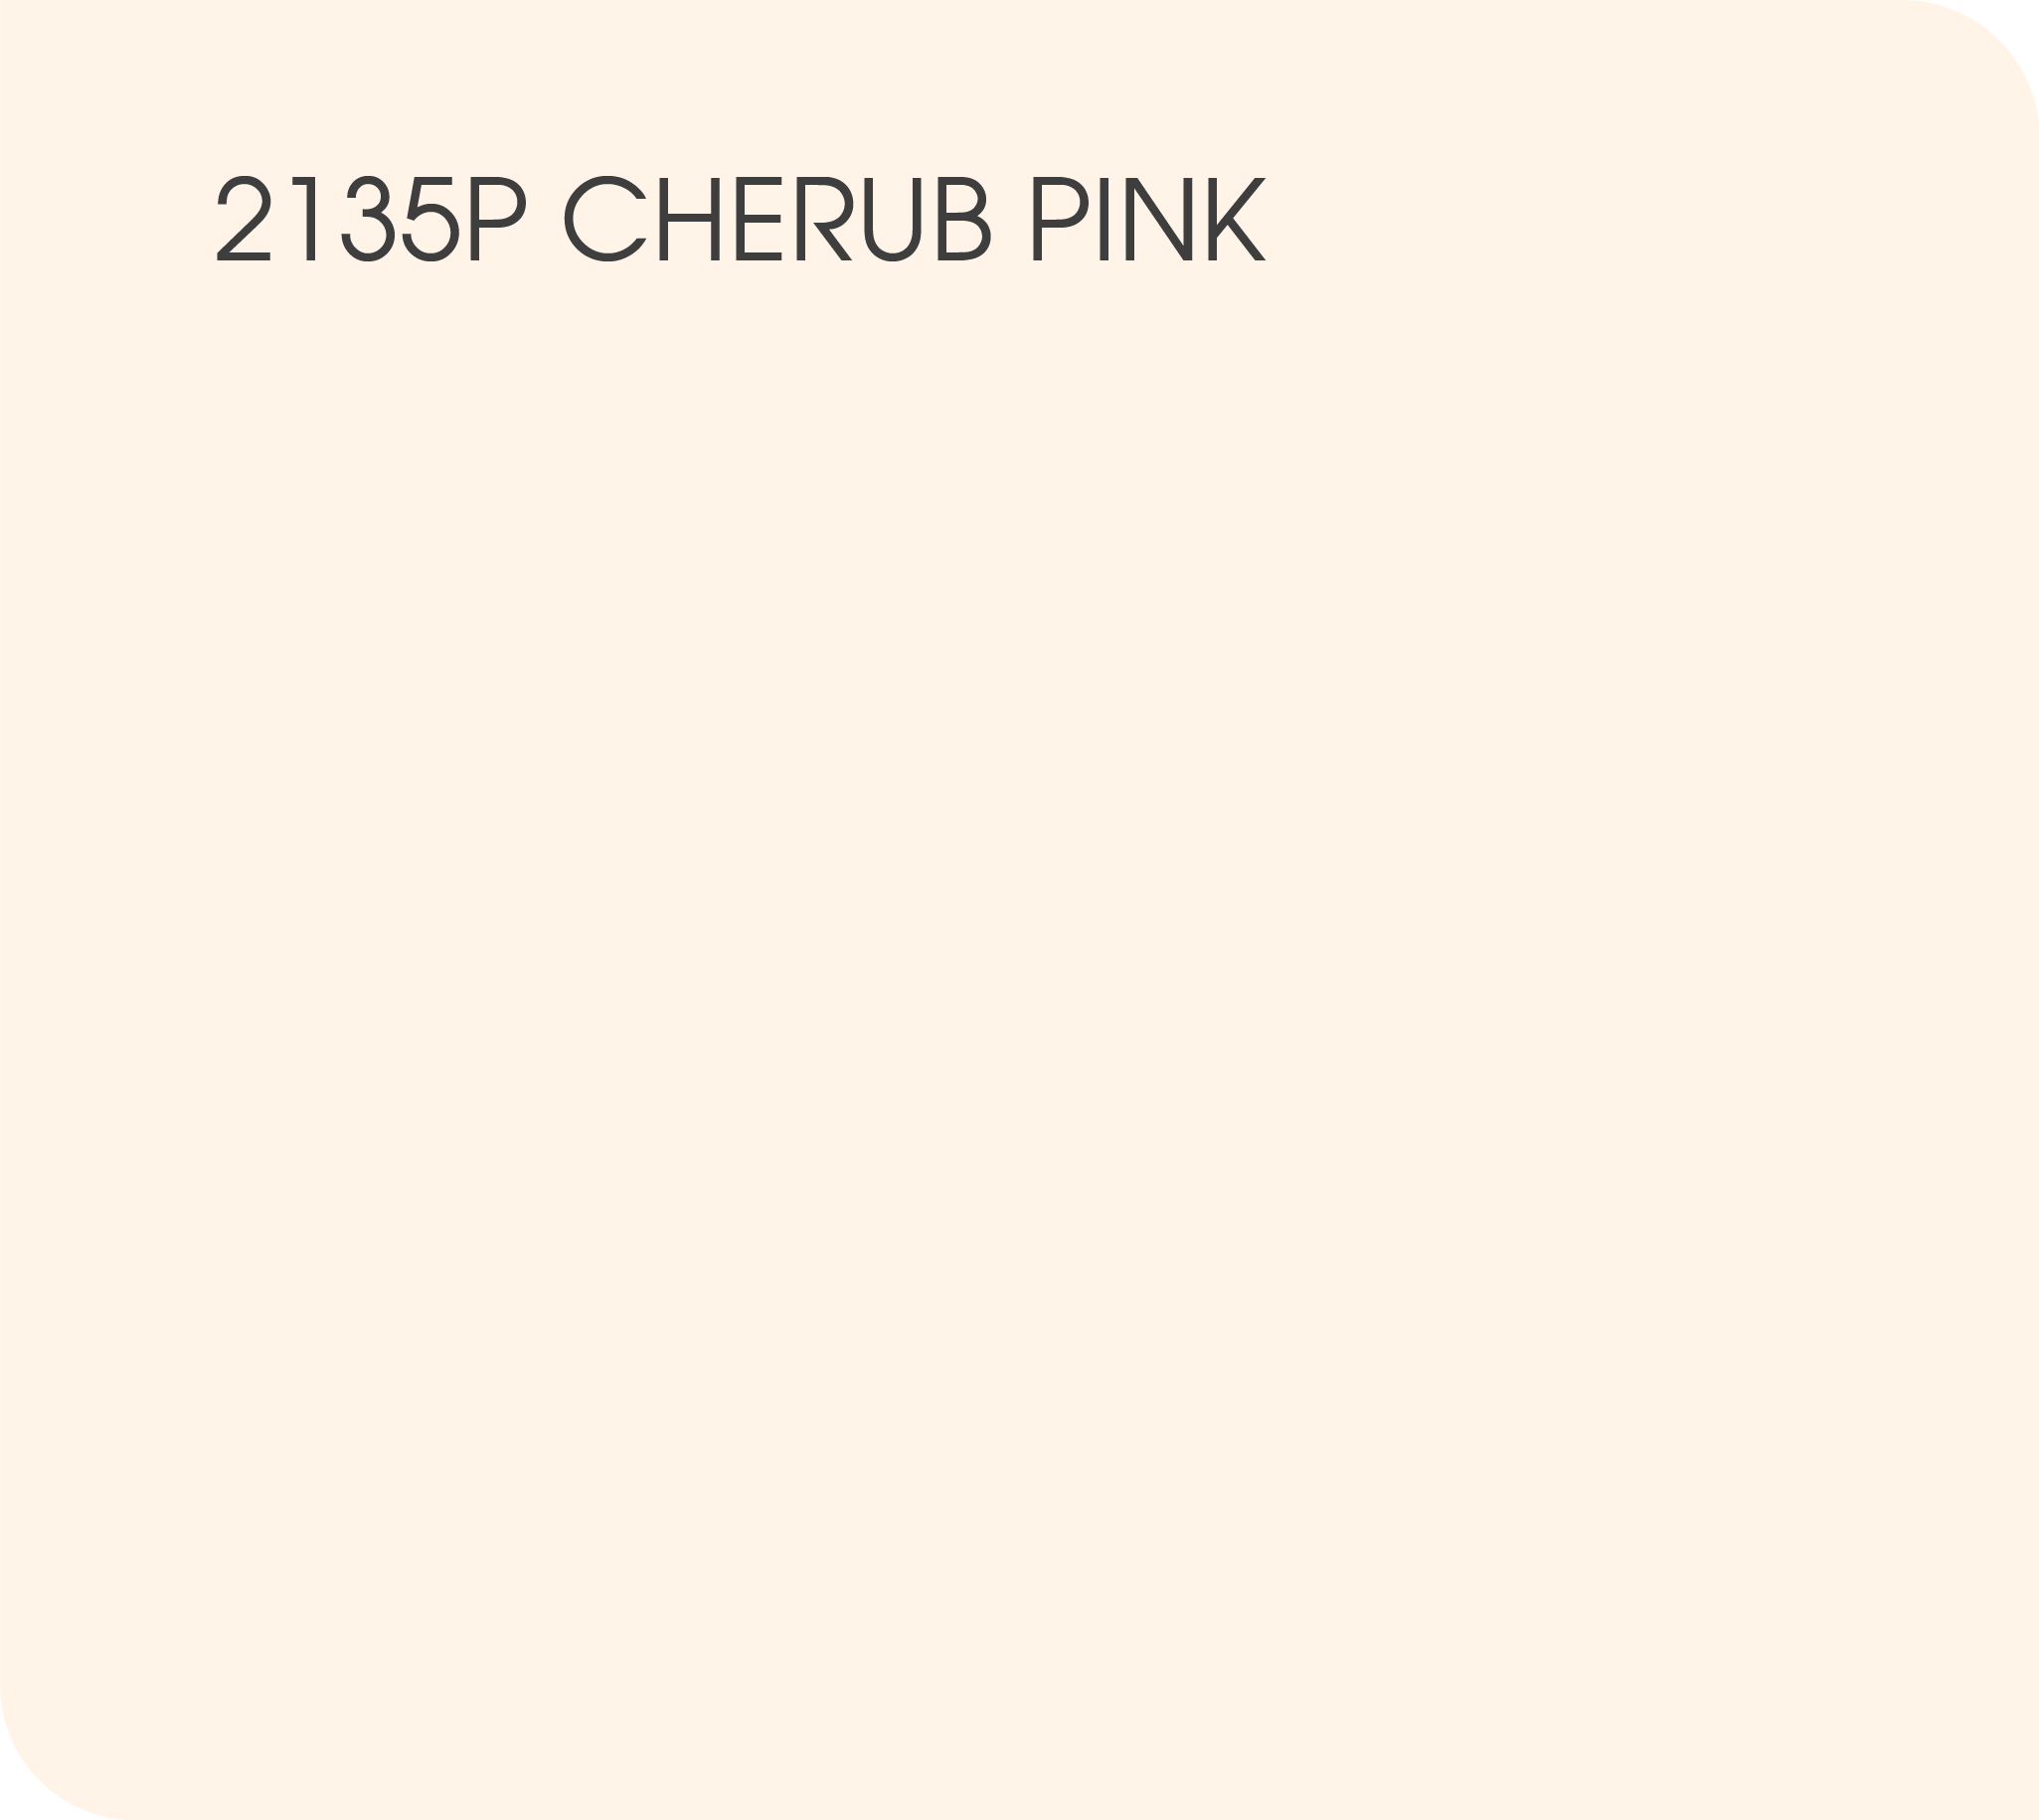 cherub pink 2135P